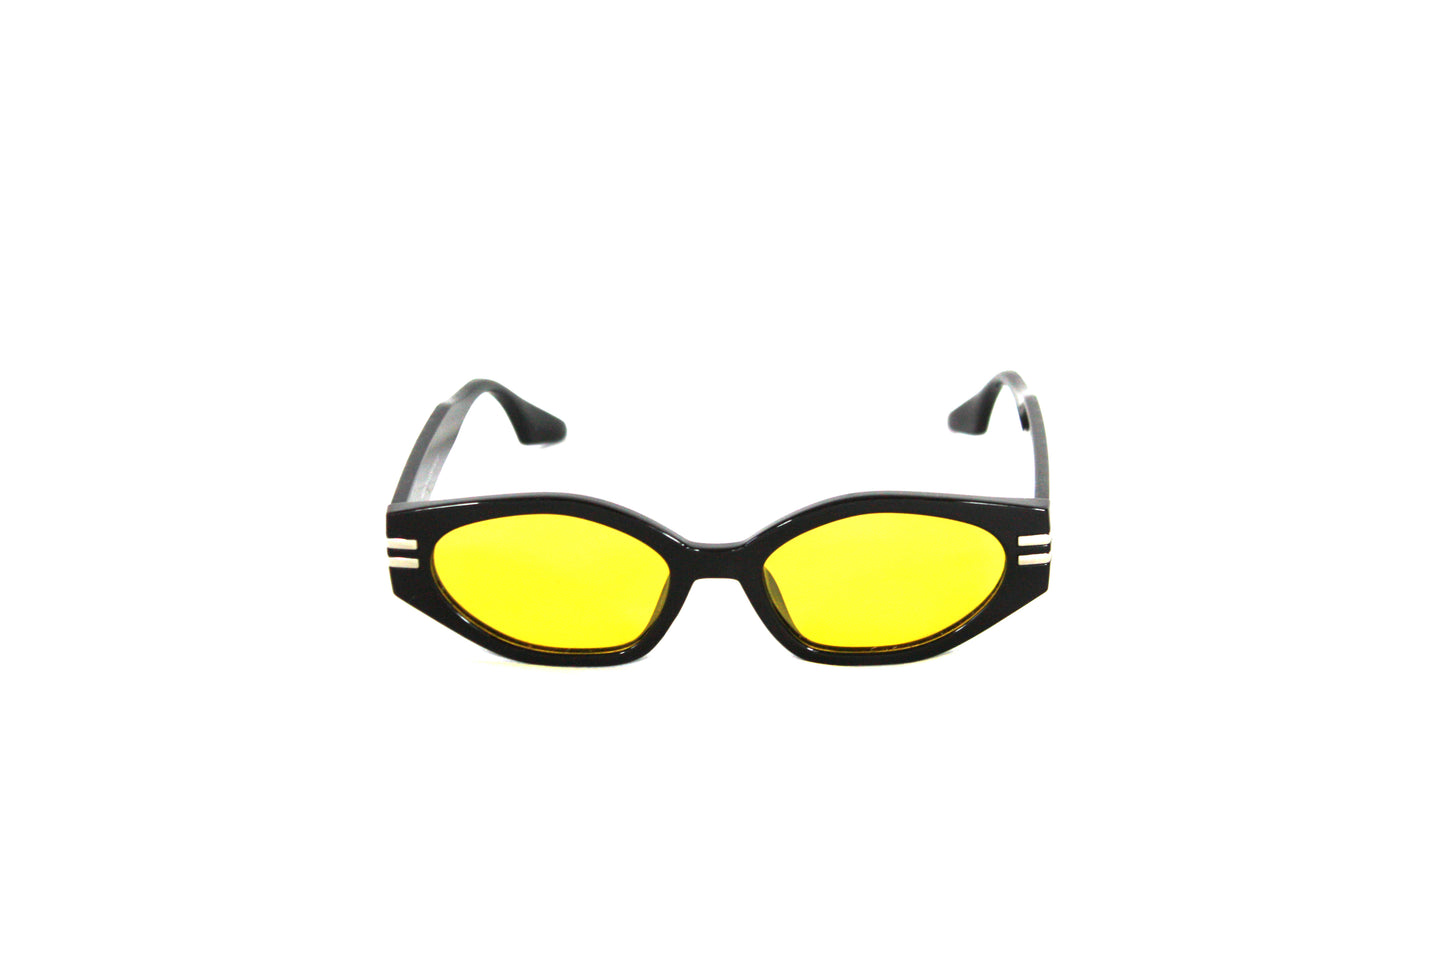 Kucho Yellow Lens Sunglasses